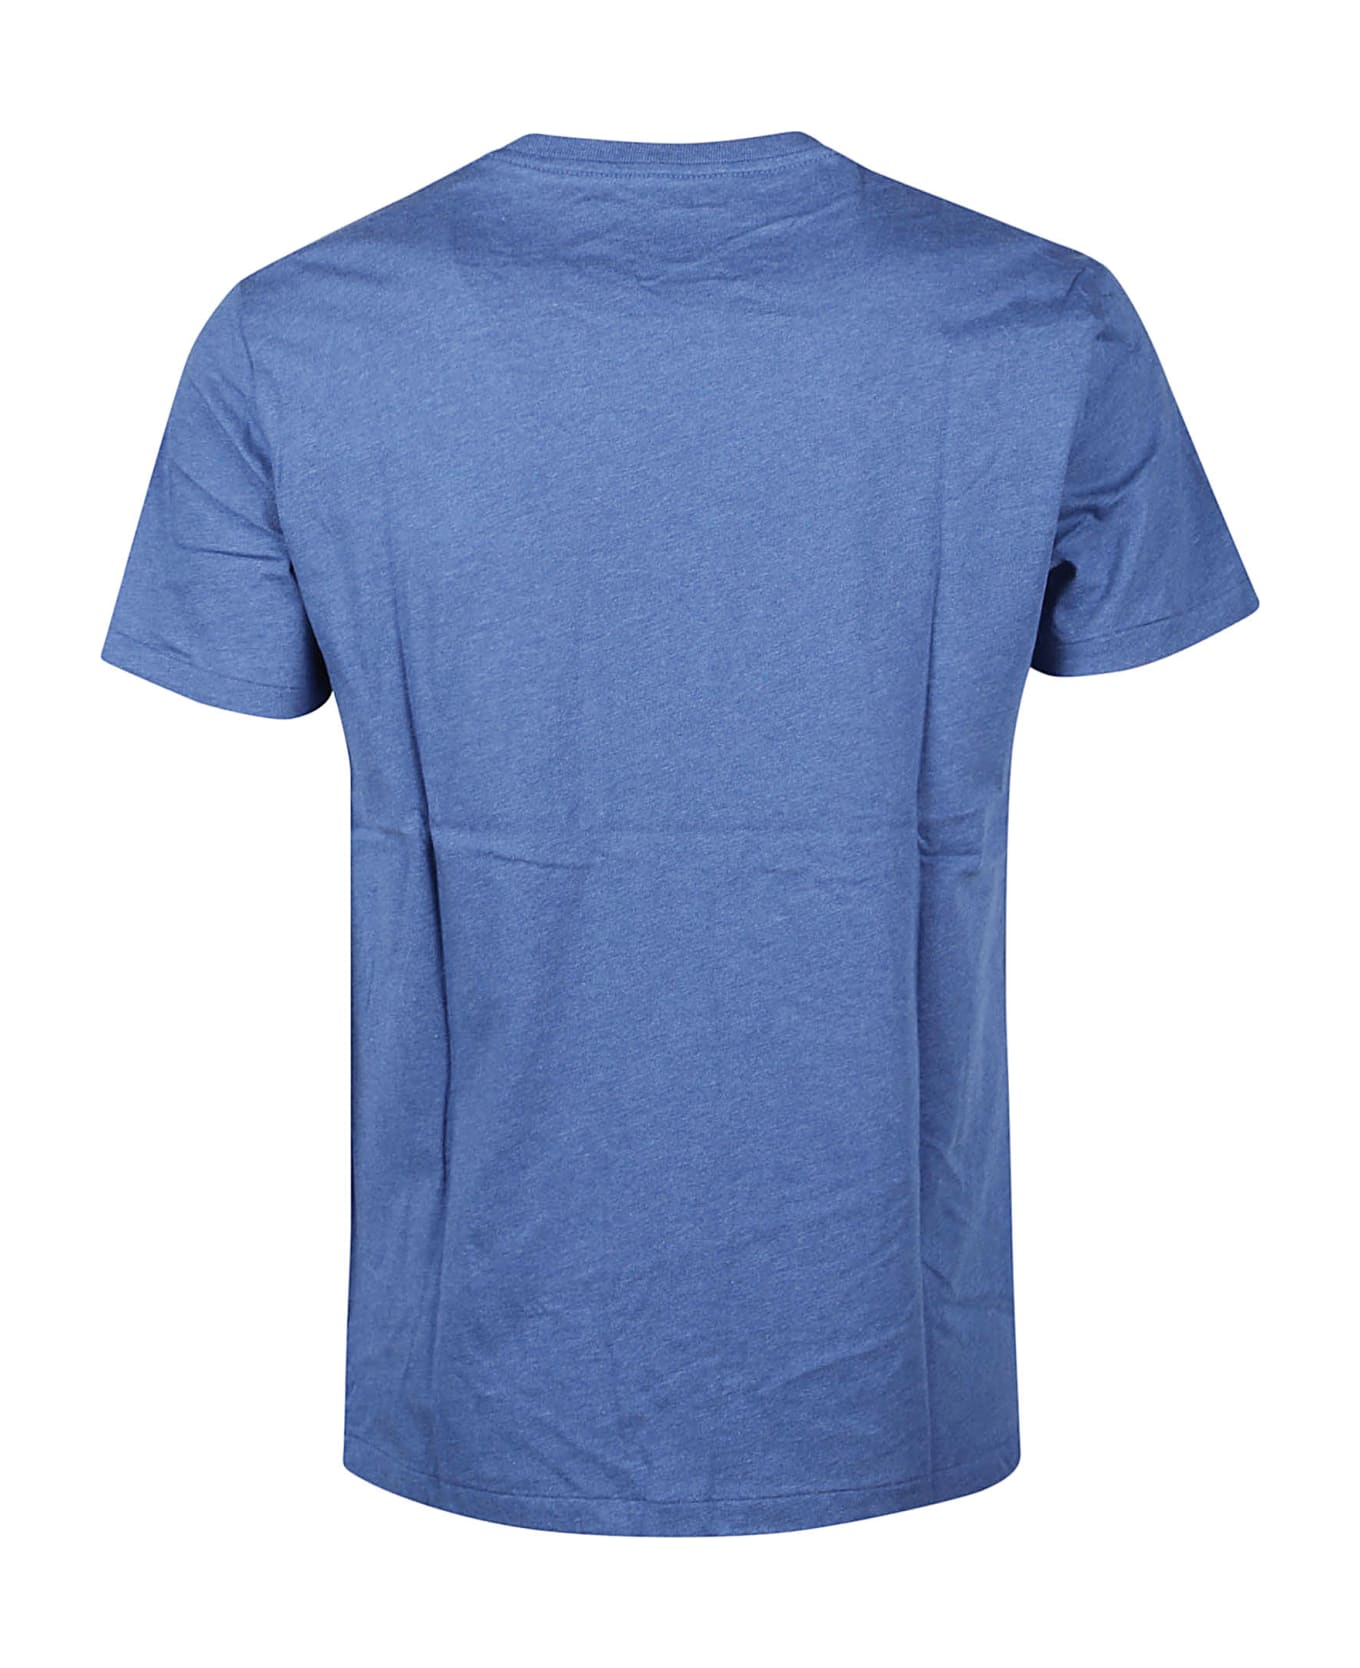 Ralph Lauren T-shirt - Fog Blue Heather シャツ